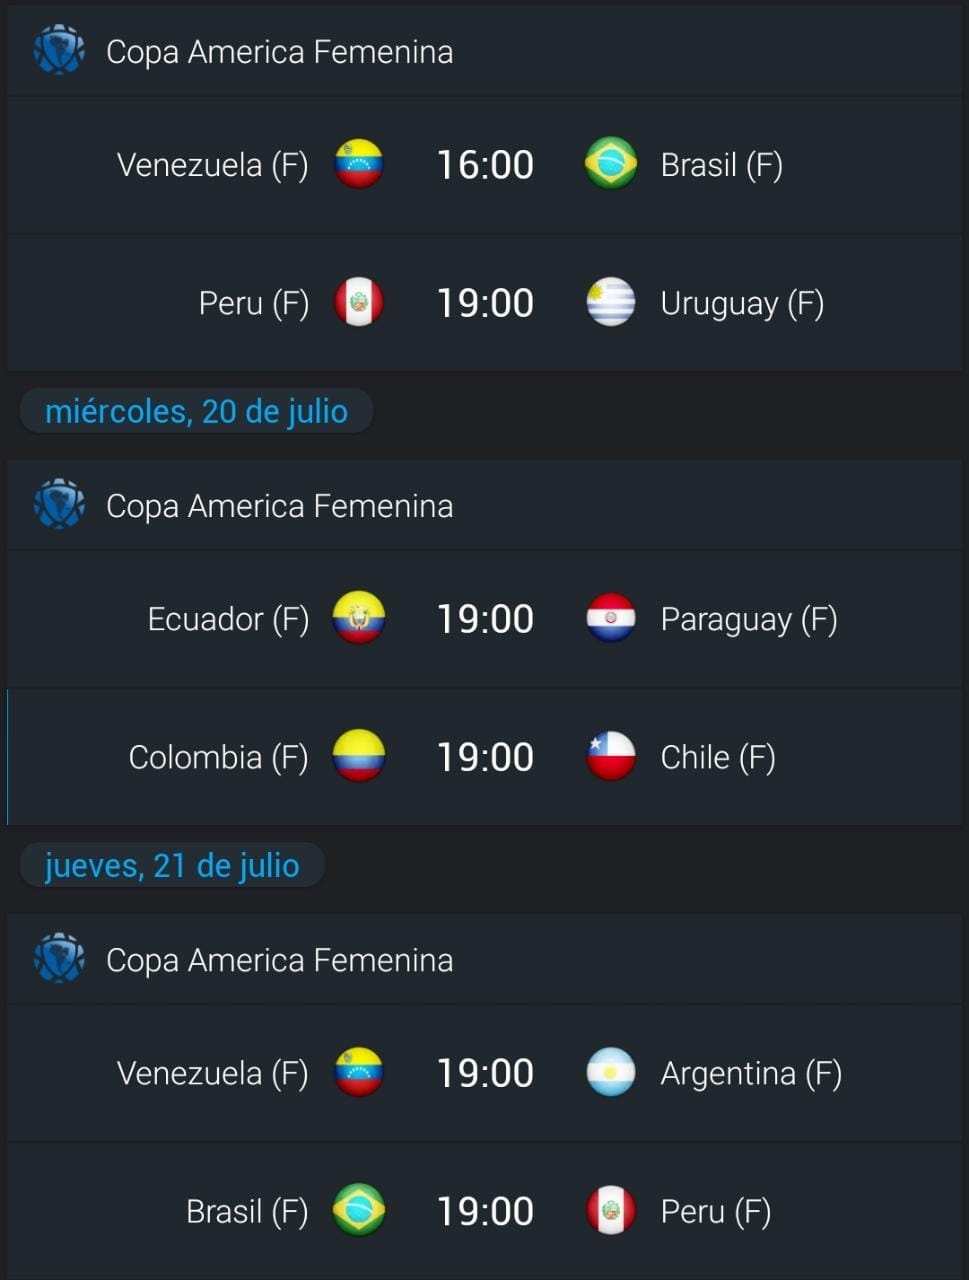 La selección Colombia cerrará su participación ante Chile en Armenia. Tomado de 365 Score